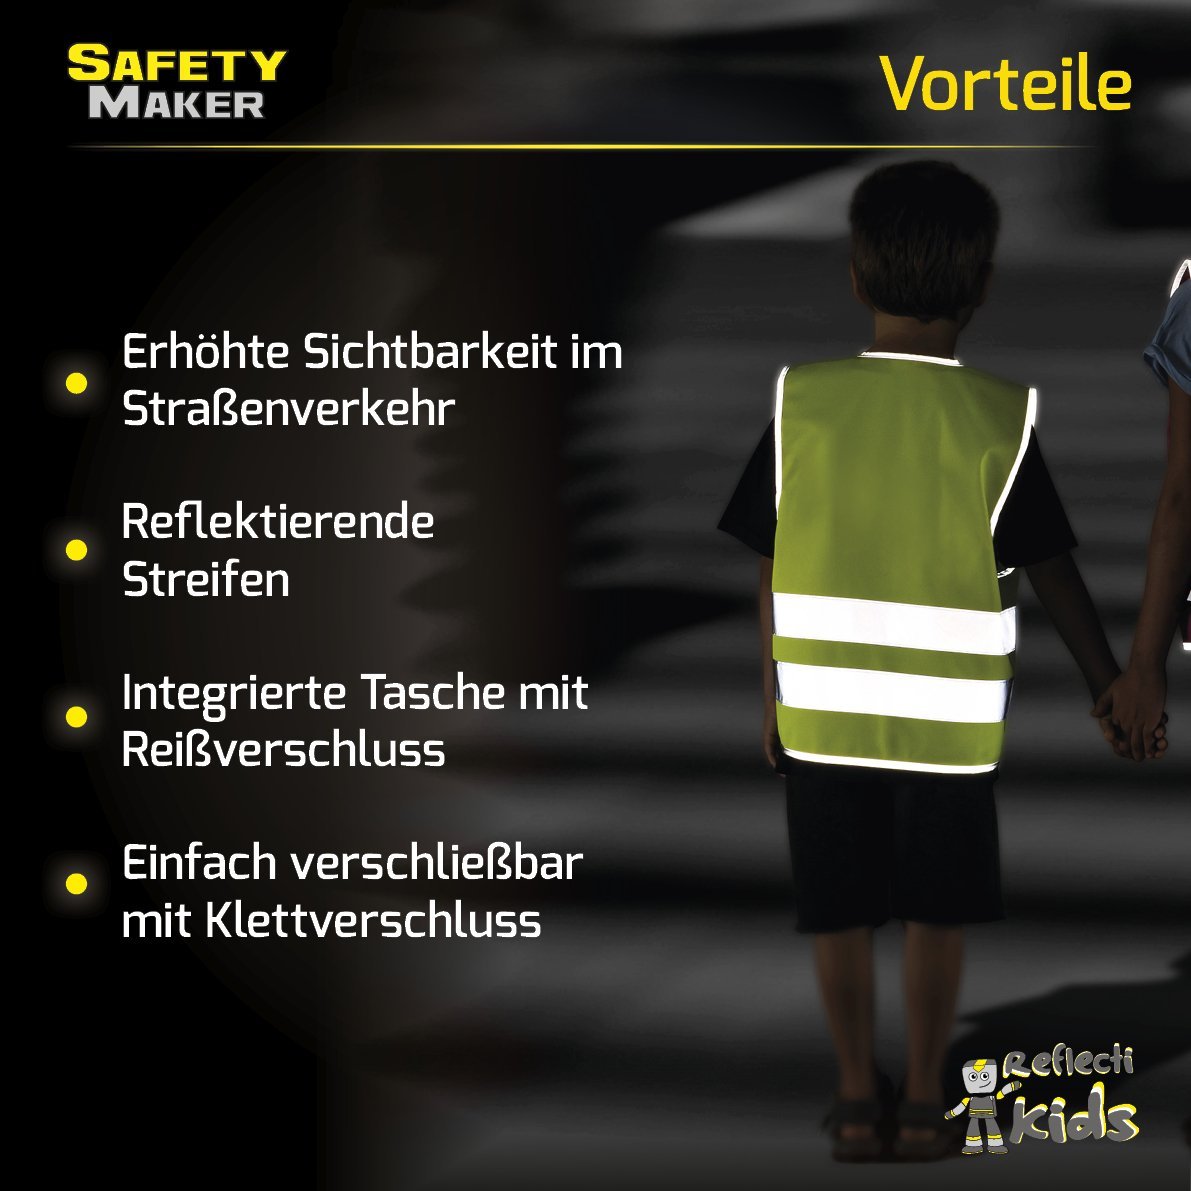 Kinder reflektierende Weste fluor zierende gelbe Sicherheits weste Warn  schutz kleidung für Kinder sicherer Verkehr Studenten Sicherheits kleidung  - AliExpress